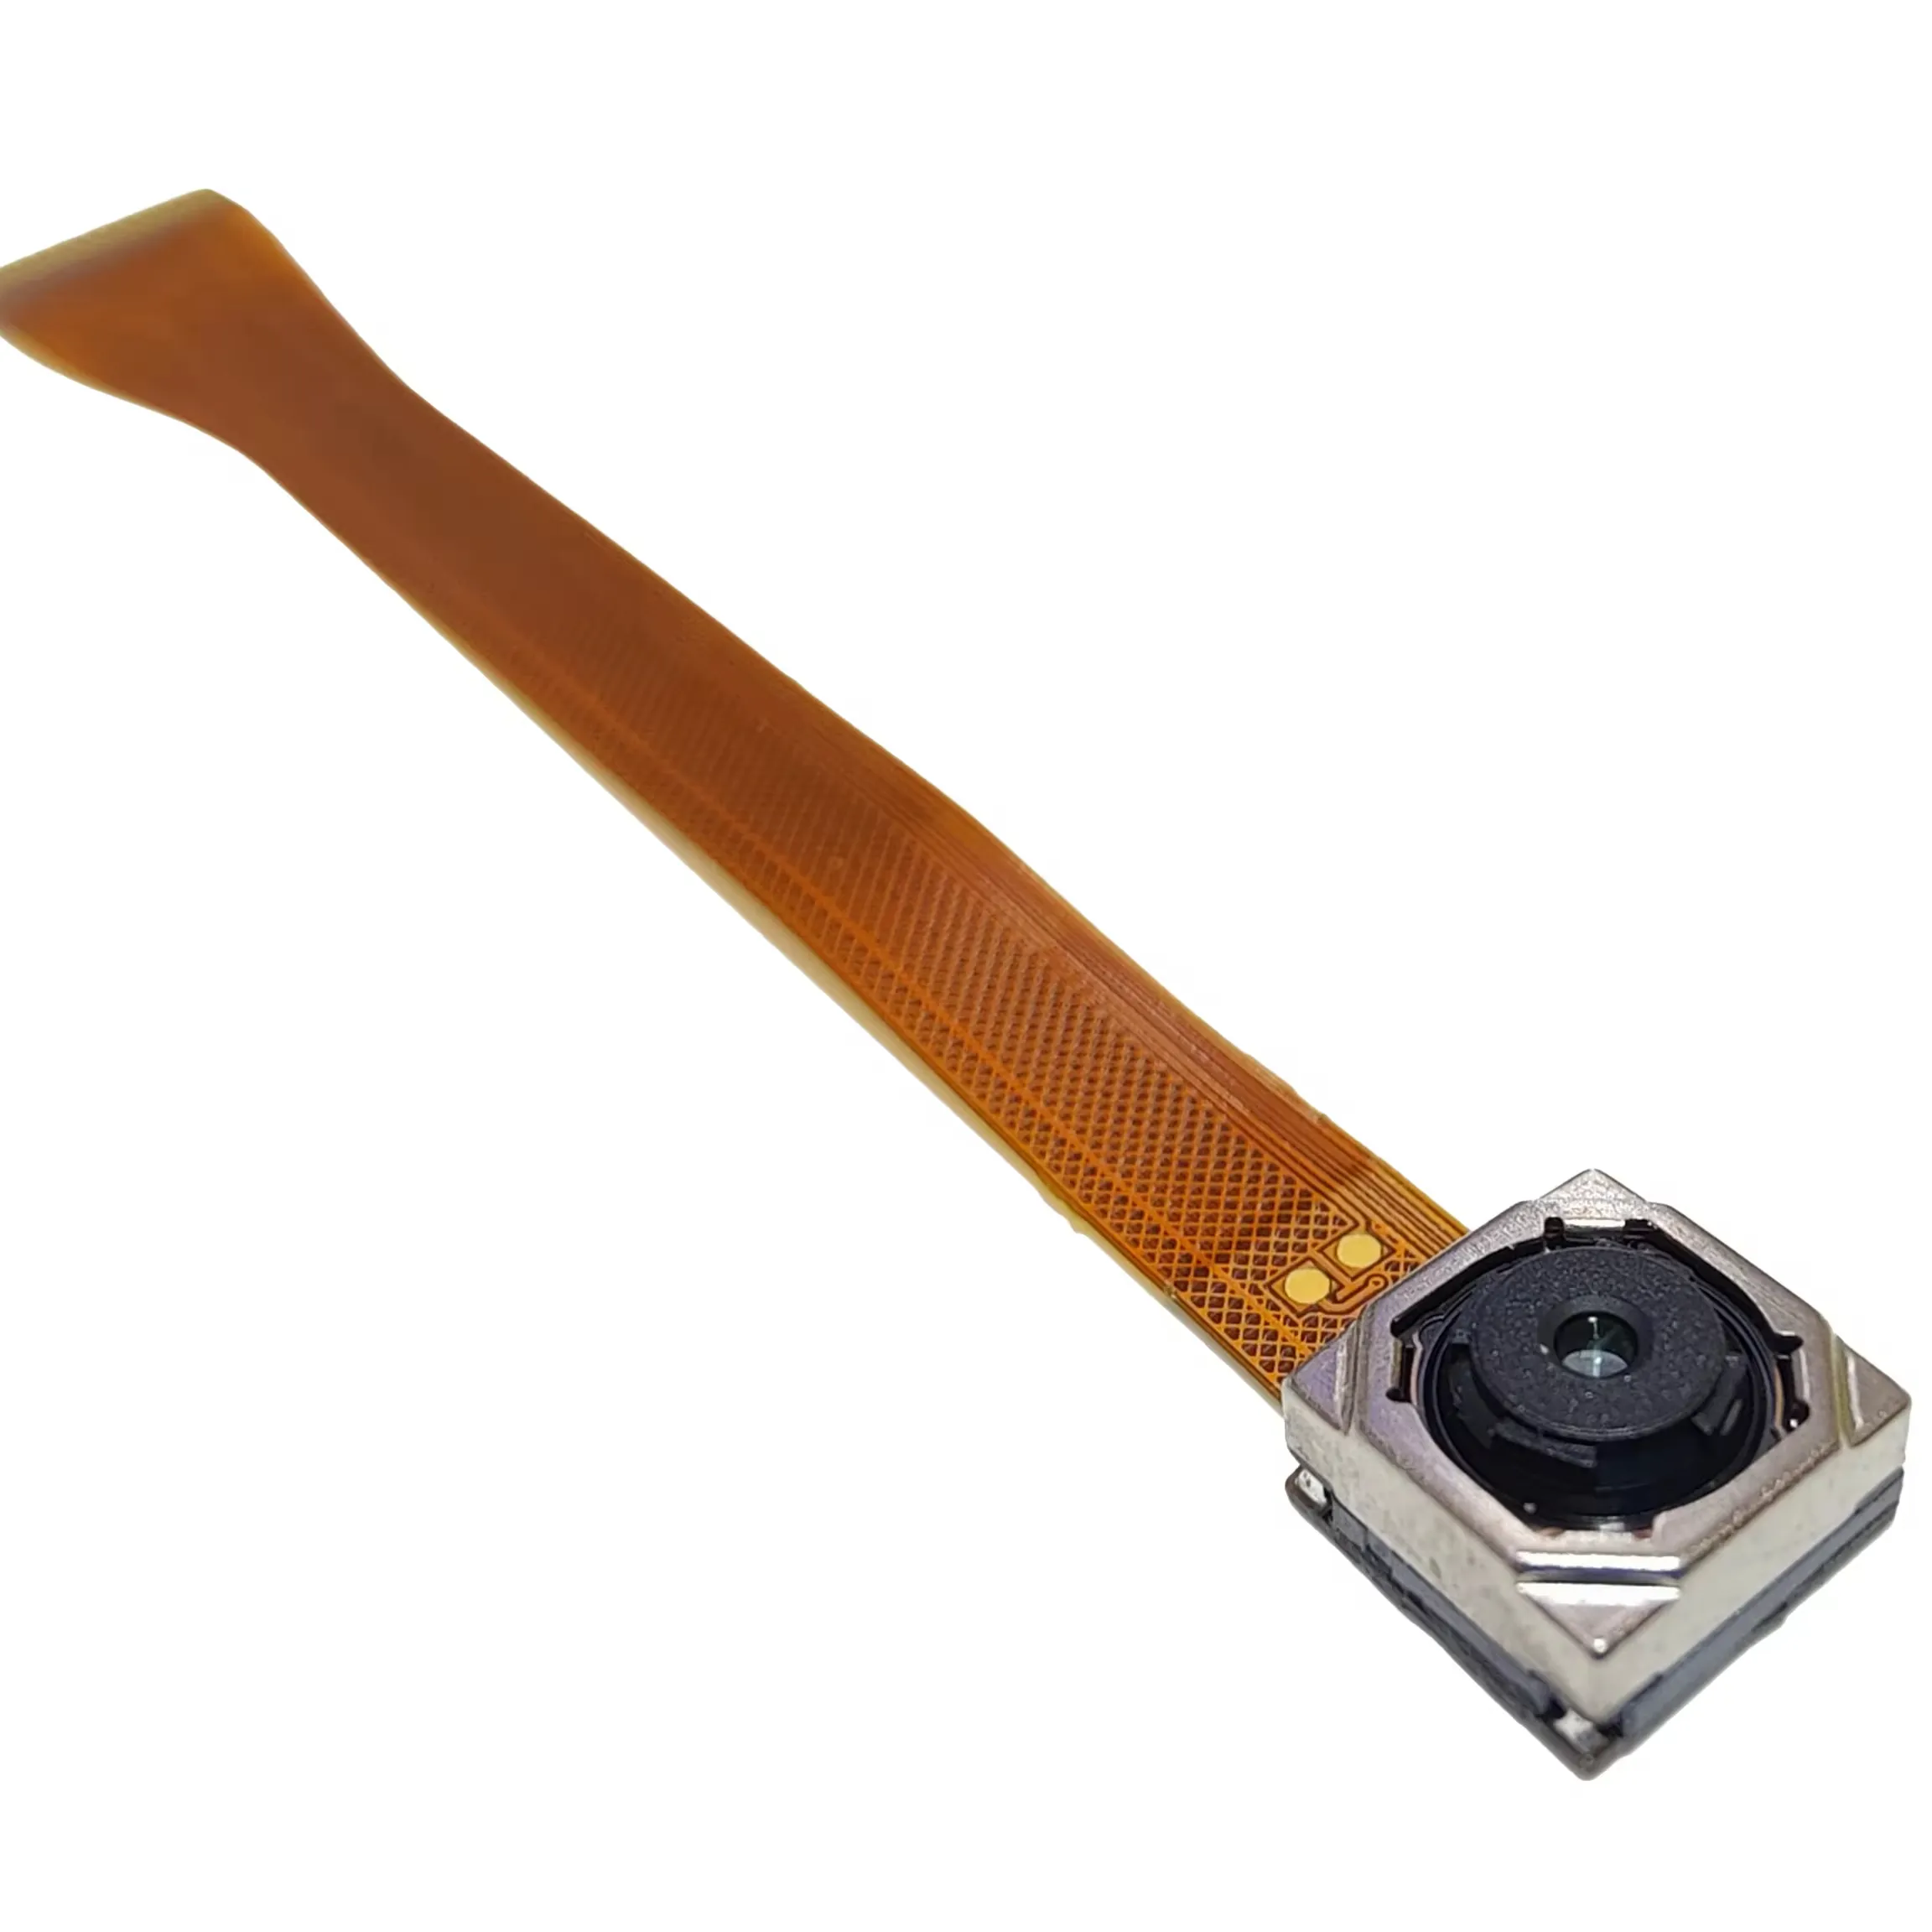 Bilgisayar ve reklam makinesi mipi cep telefonu için Ultra yüksek çözünürlüklü özelleştirilebilir 13MP dizüstü HDR kamera modülü